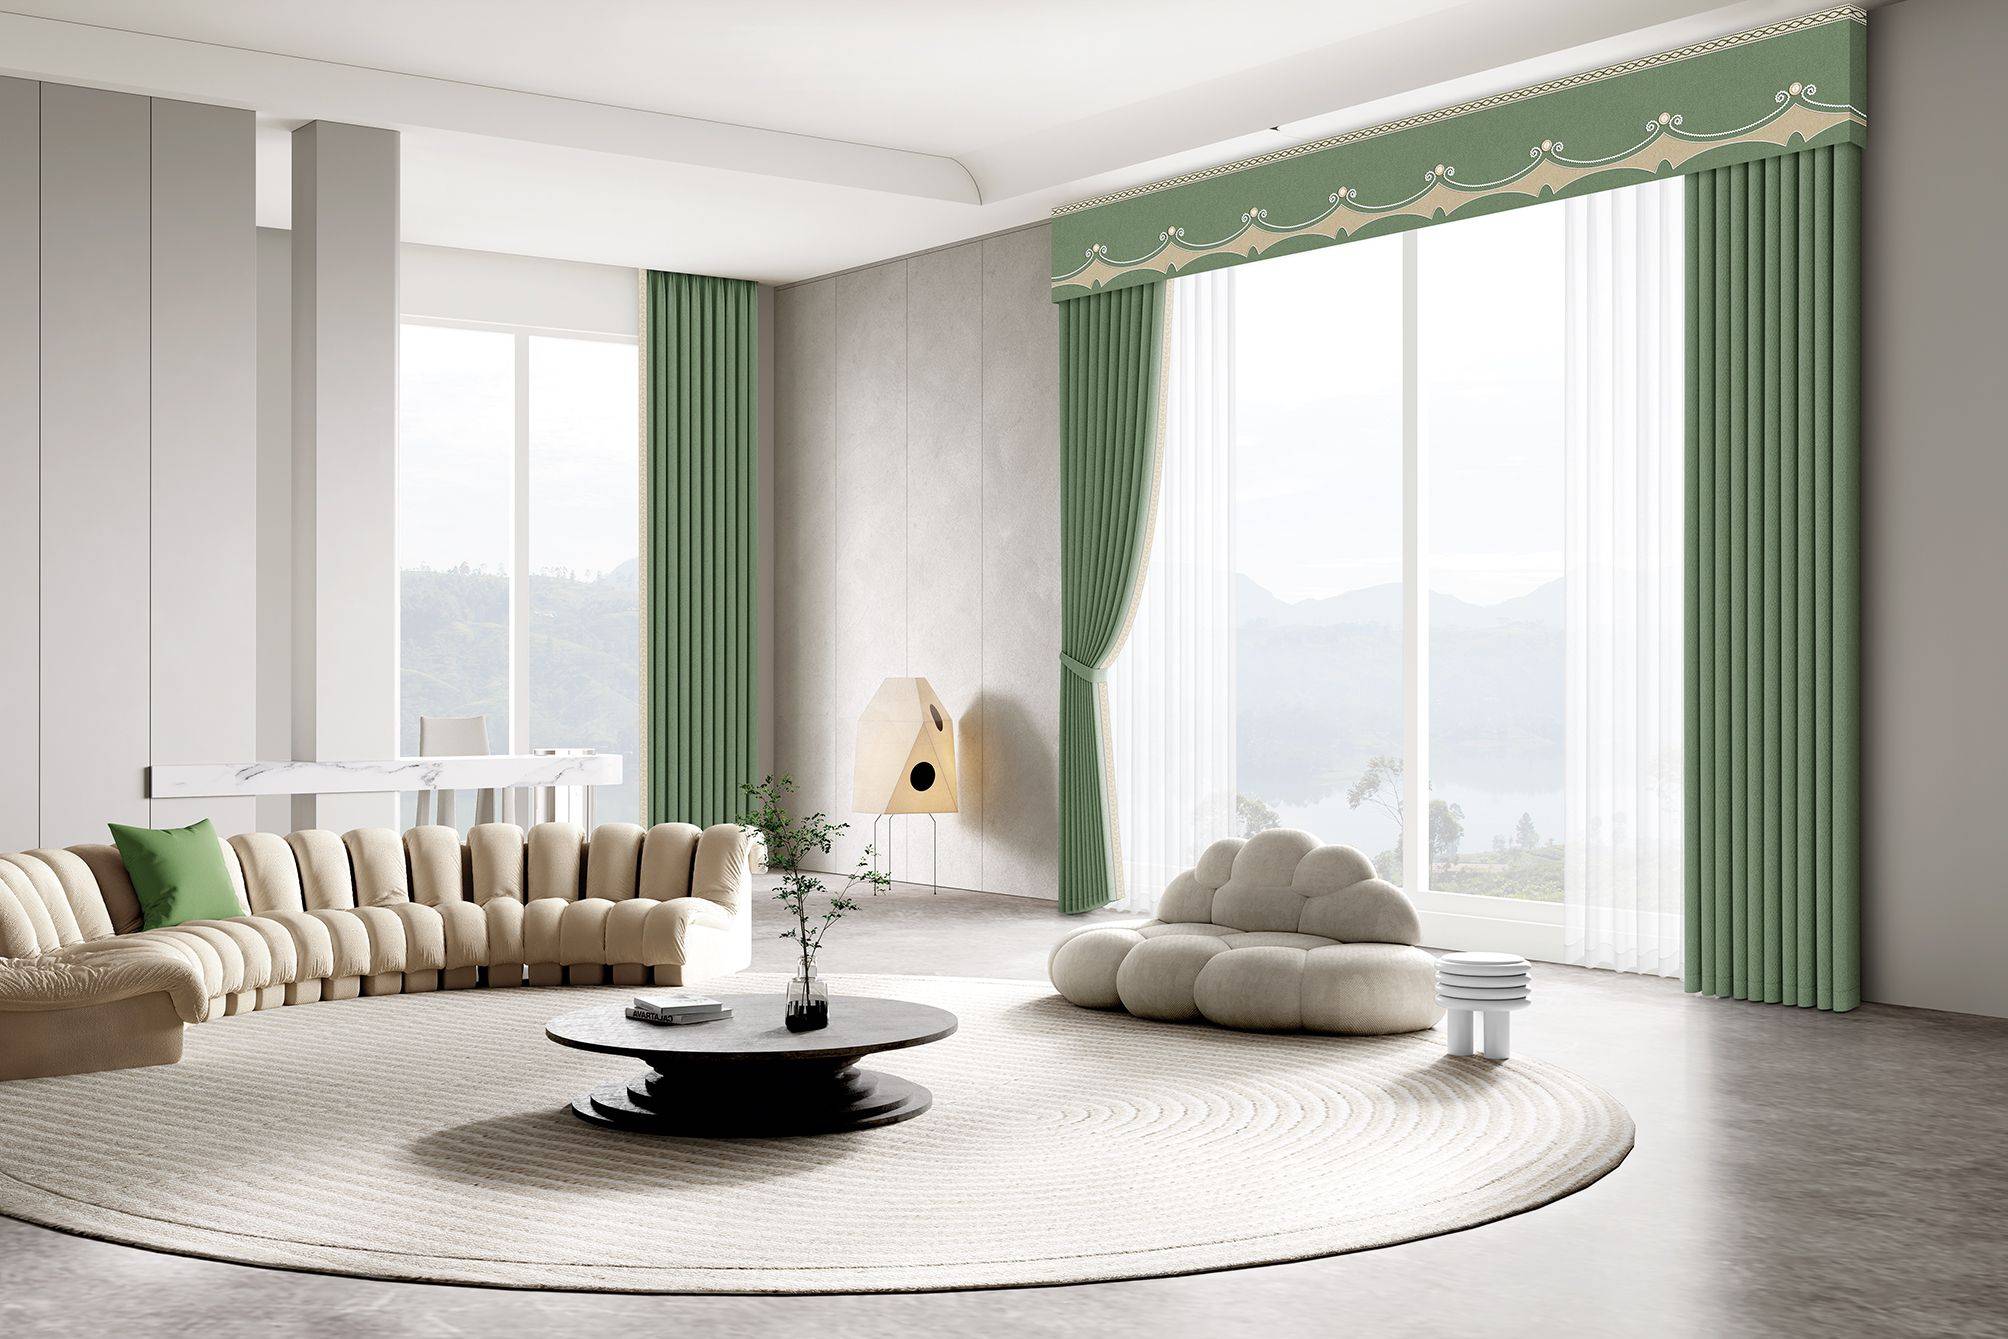 二手房装修中窗帘与墙布风格搭配的基本原则米兰窗帘